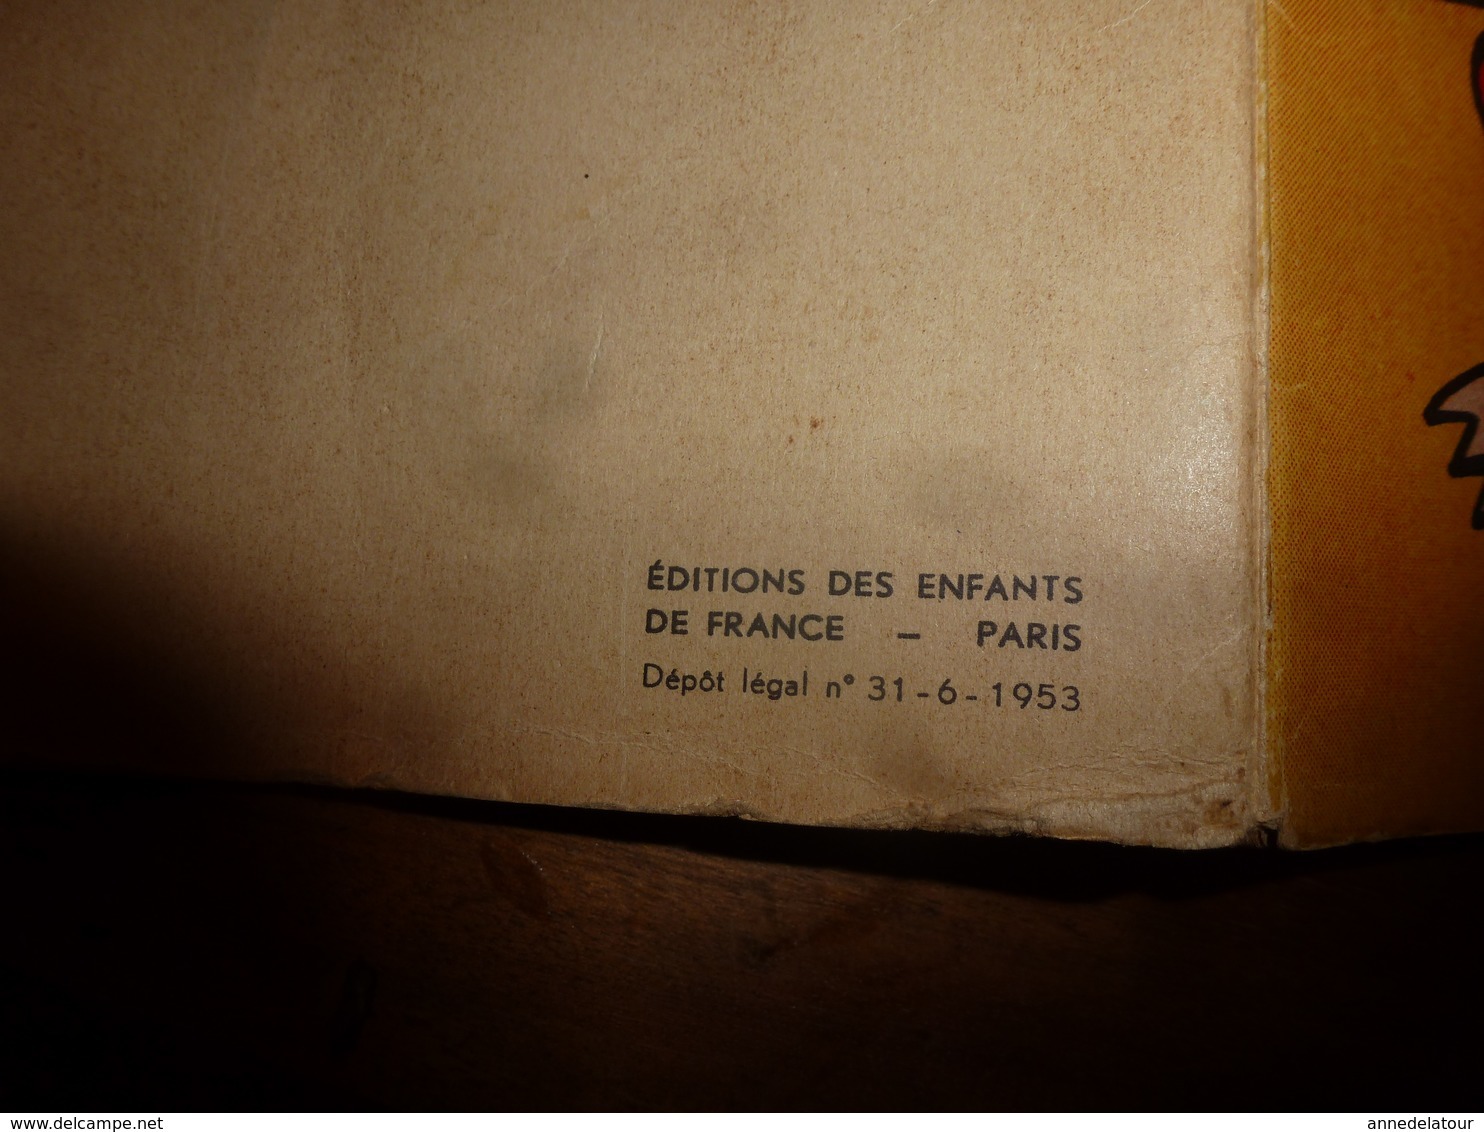 1953 NOUNOUCHE Et Sa Mère,   Texte Et Dessins De DURST - Sammlungen